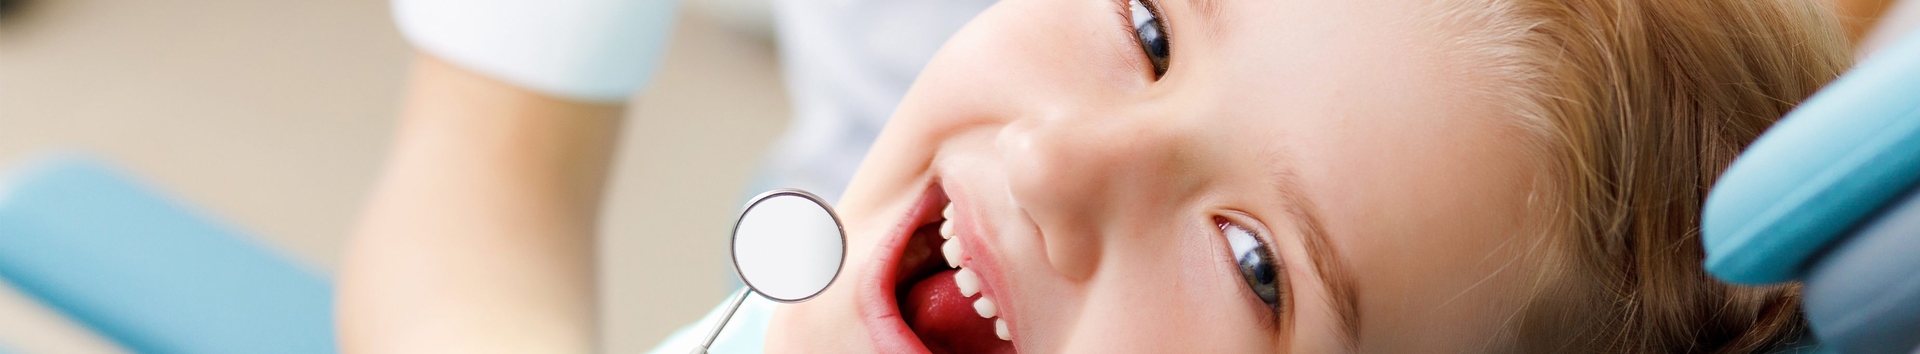 Dentista infantil: Como a odontopediatria acaba com o choro